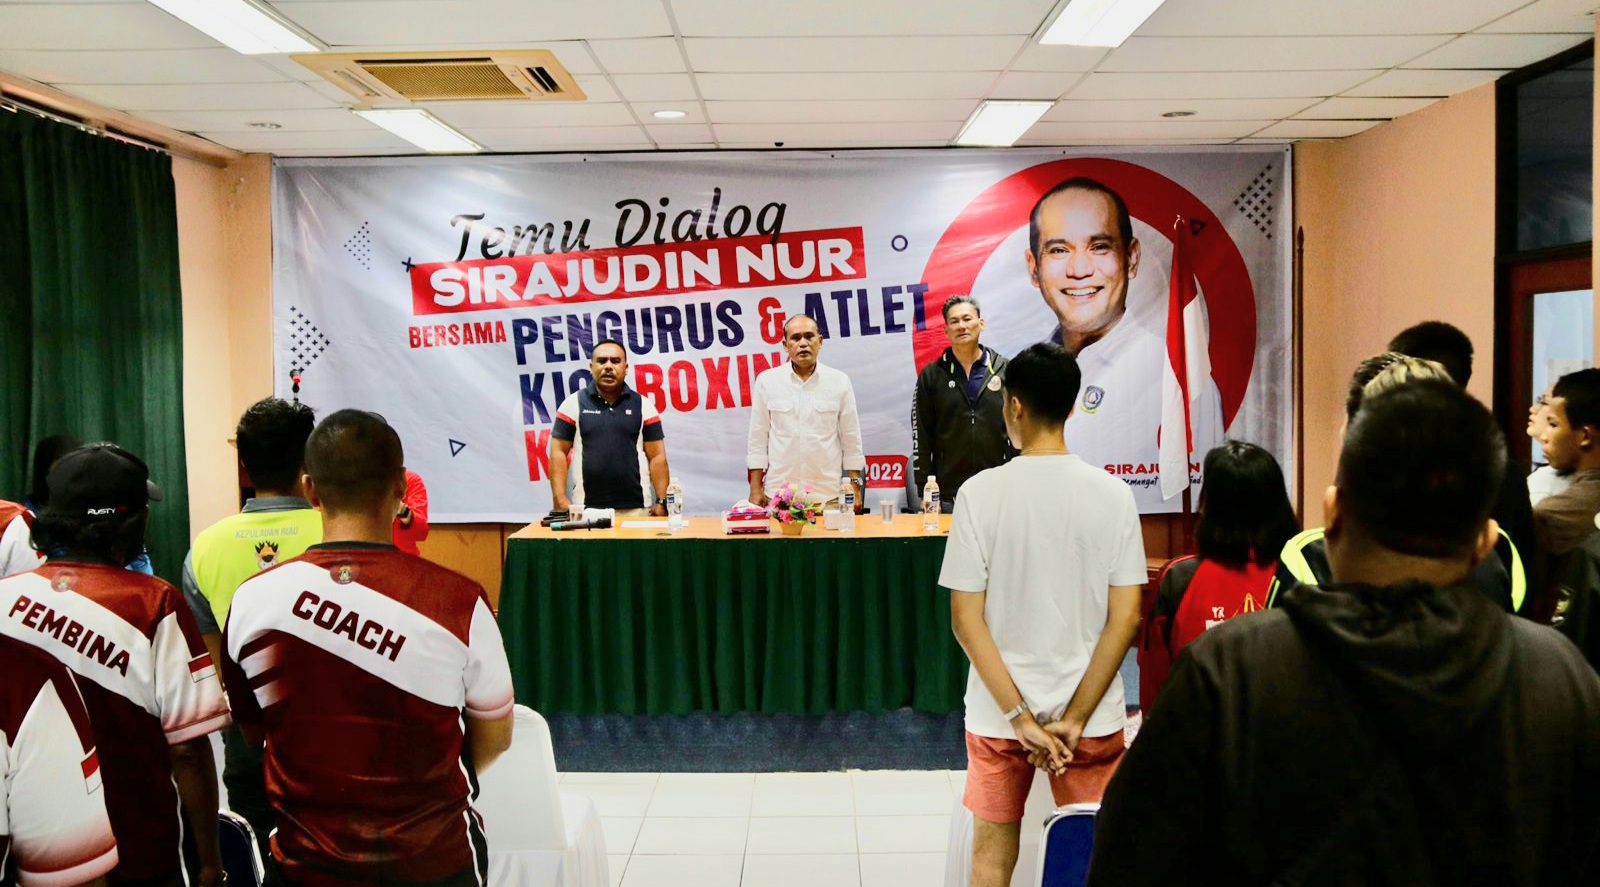 Siap Gelar Kejurnas Kickboxing di Batam, Sirajudin Nur Kumpulkan Pengcab dan Atlet